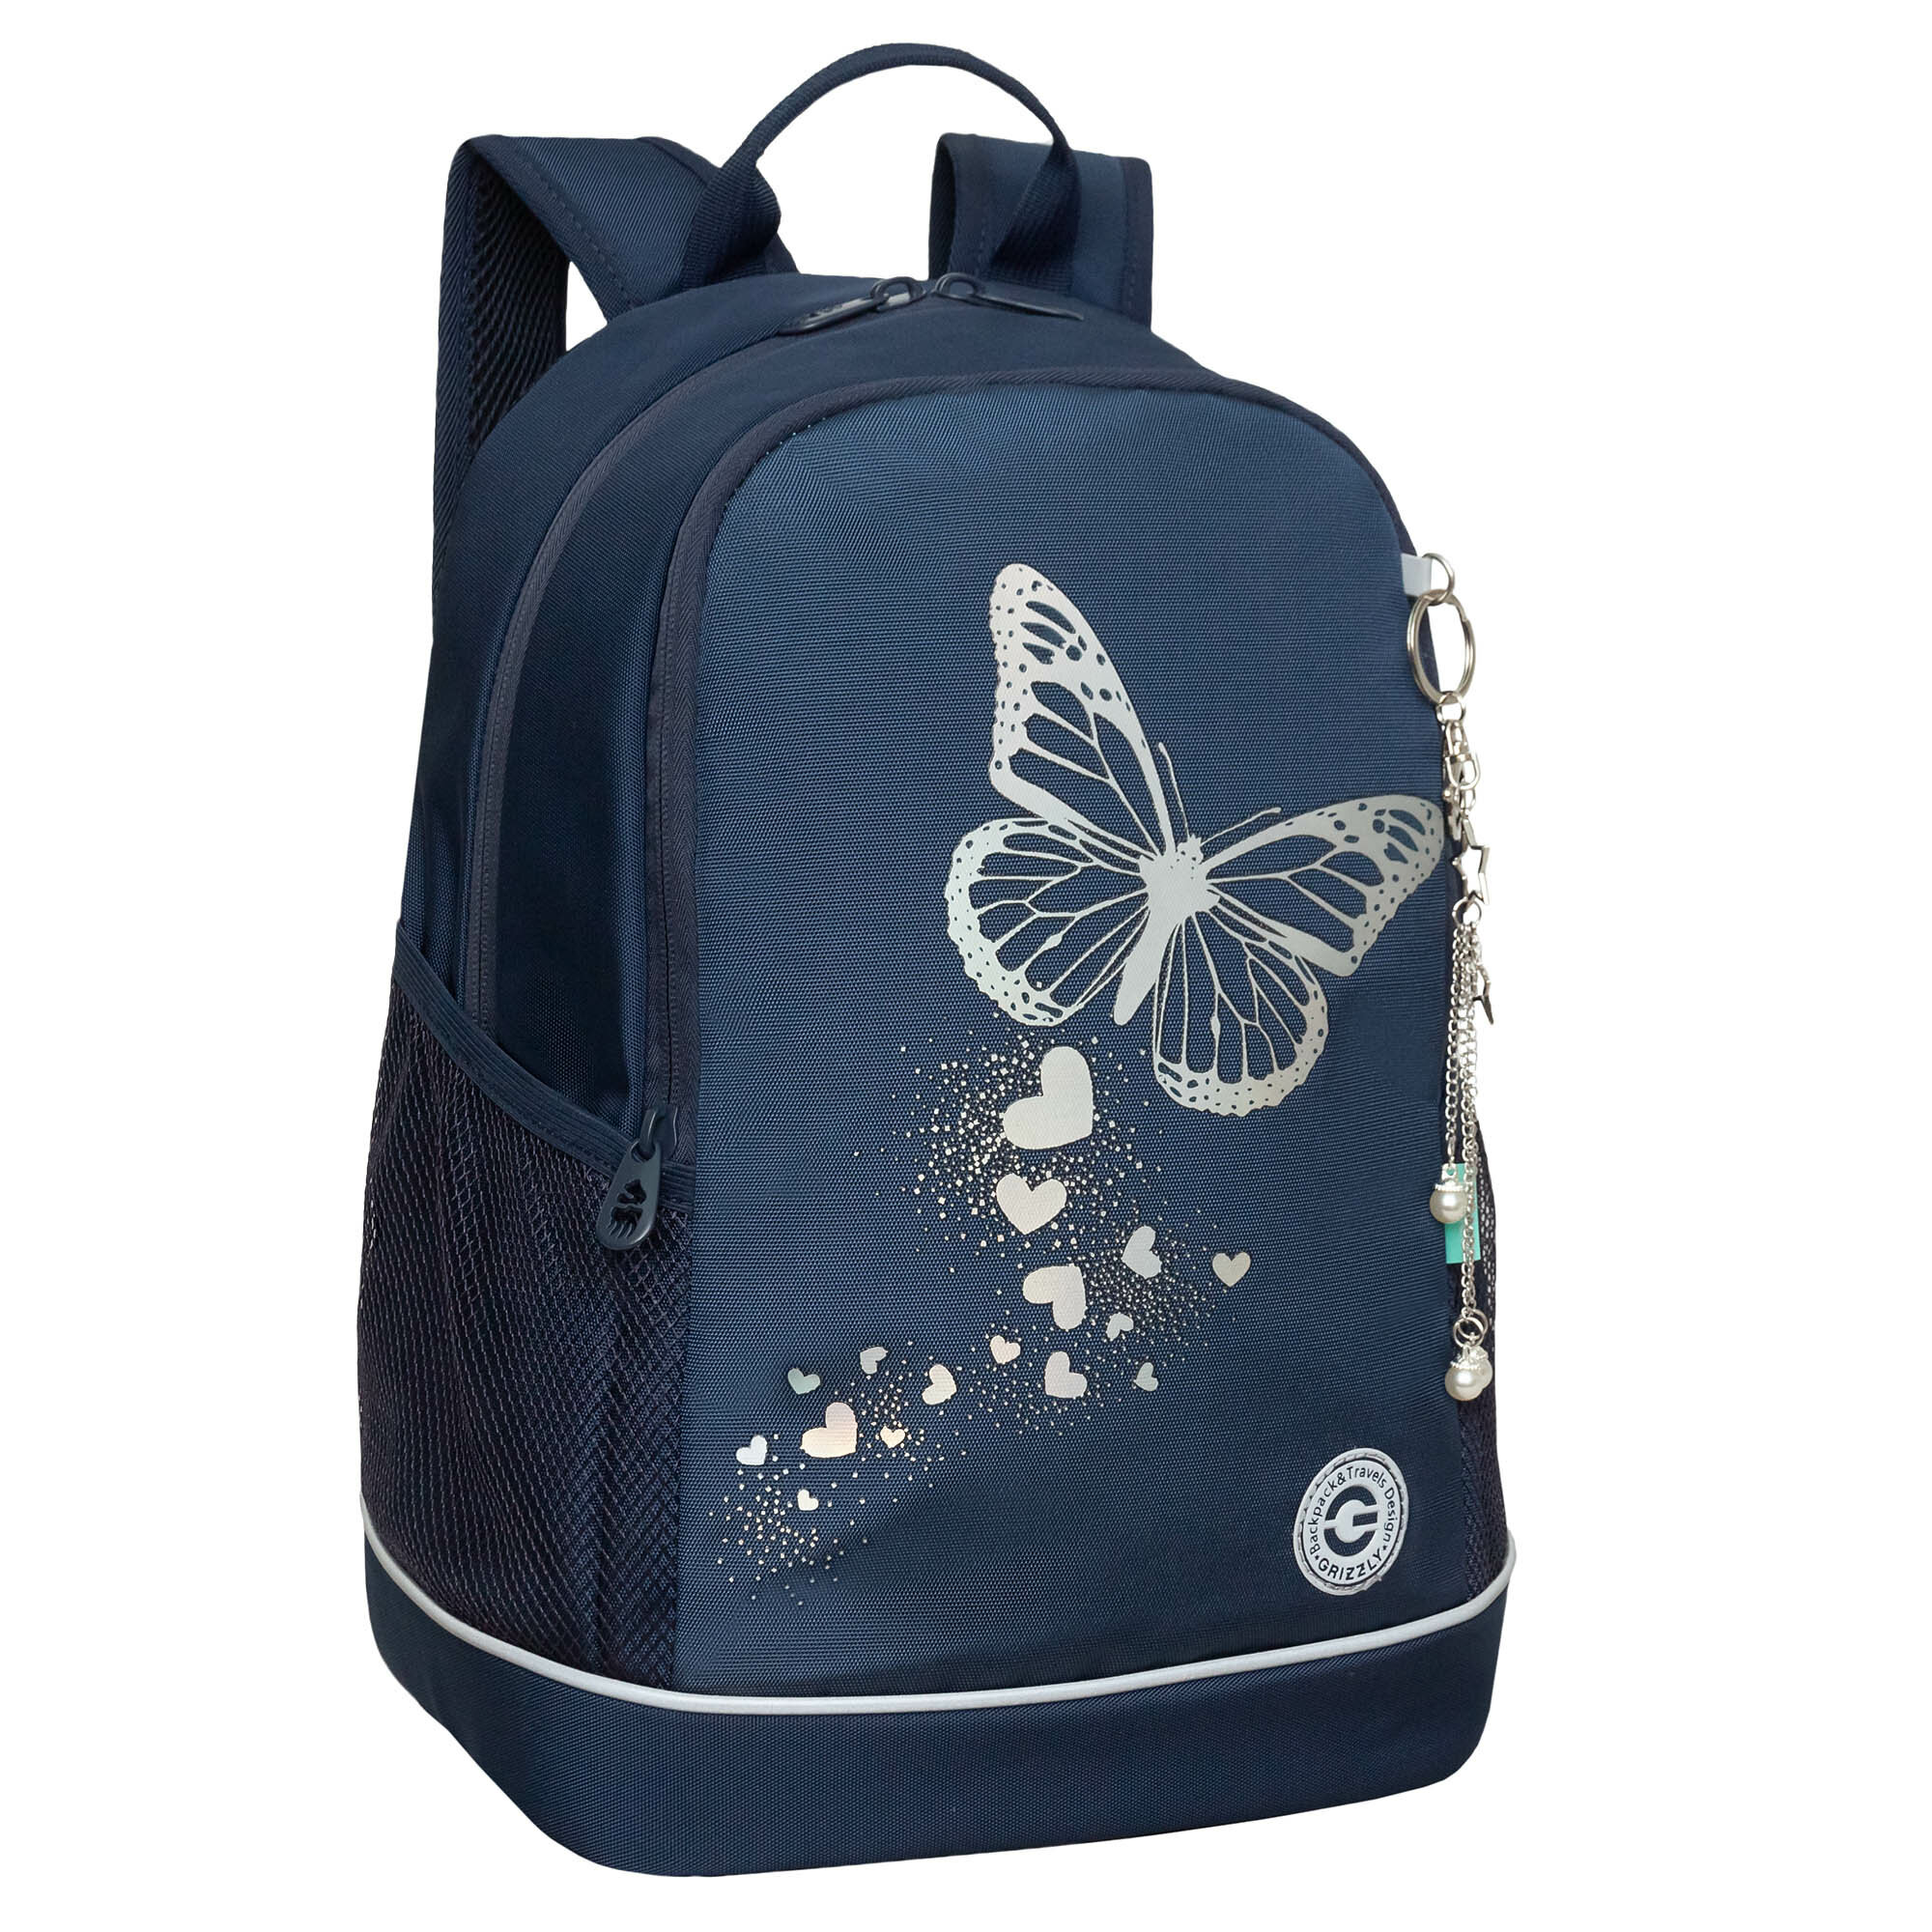 Рюкзак школьный GRIZZLY с карманом для ноутбука 13", жесткой спинкой, двумя отделениями, для девочки RG-463-5/3